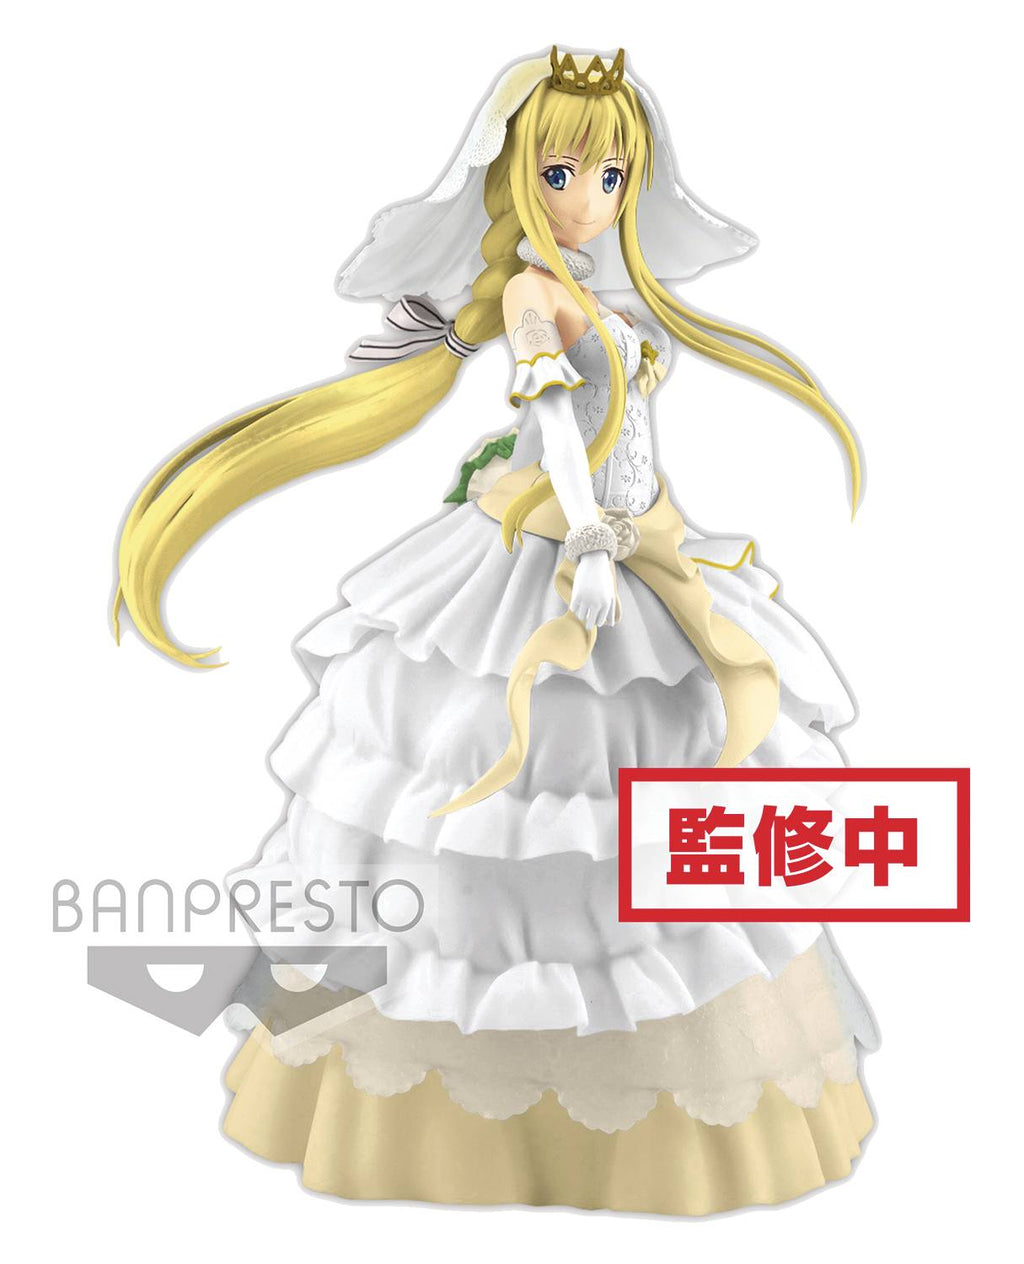 Sword Art Online Code Register 8 Inch Static Figure EXQ Series - Alice Wedding